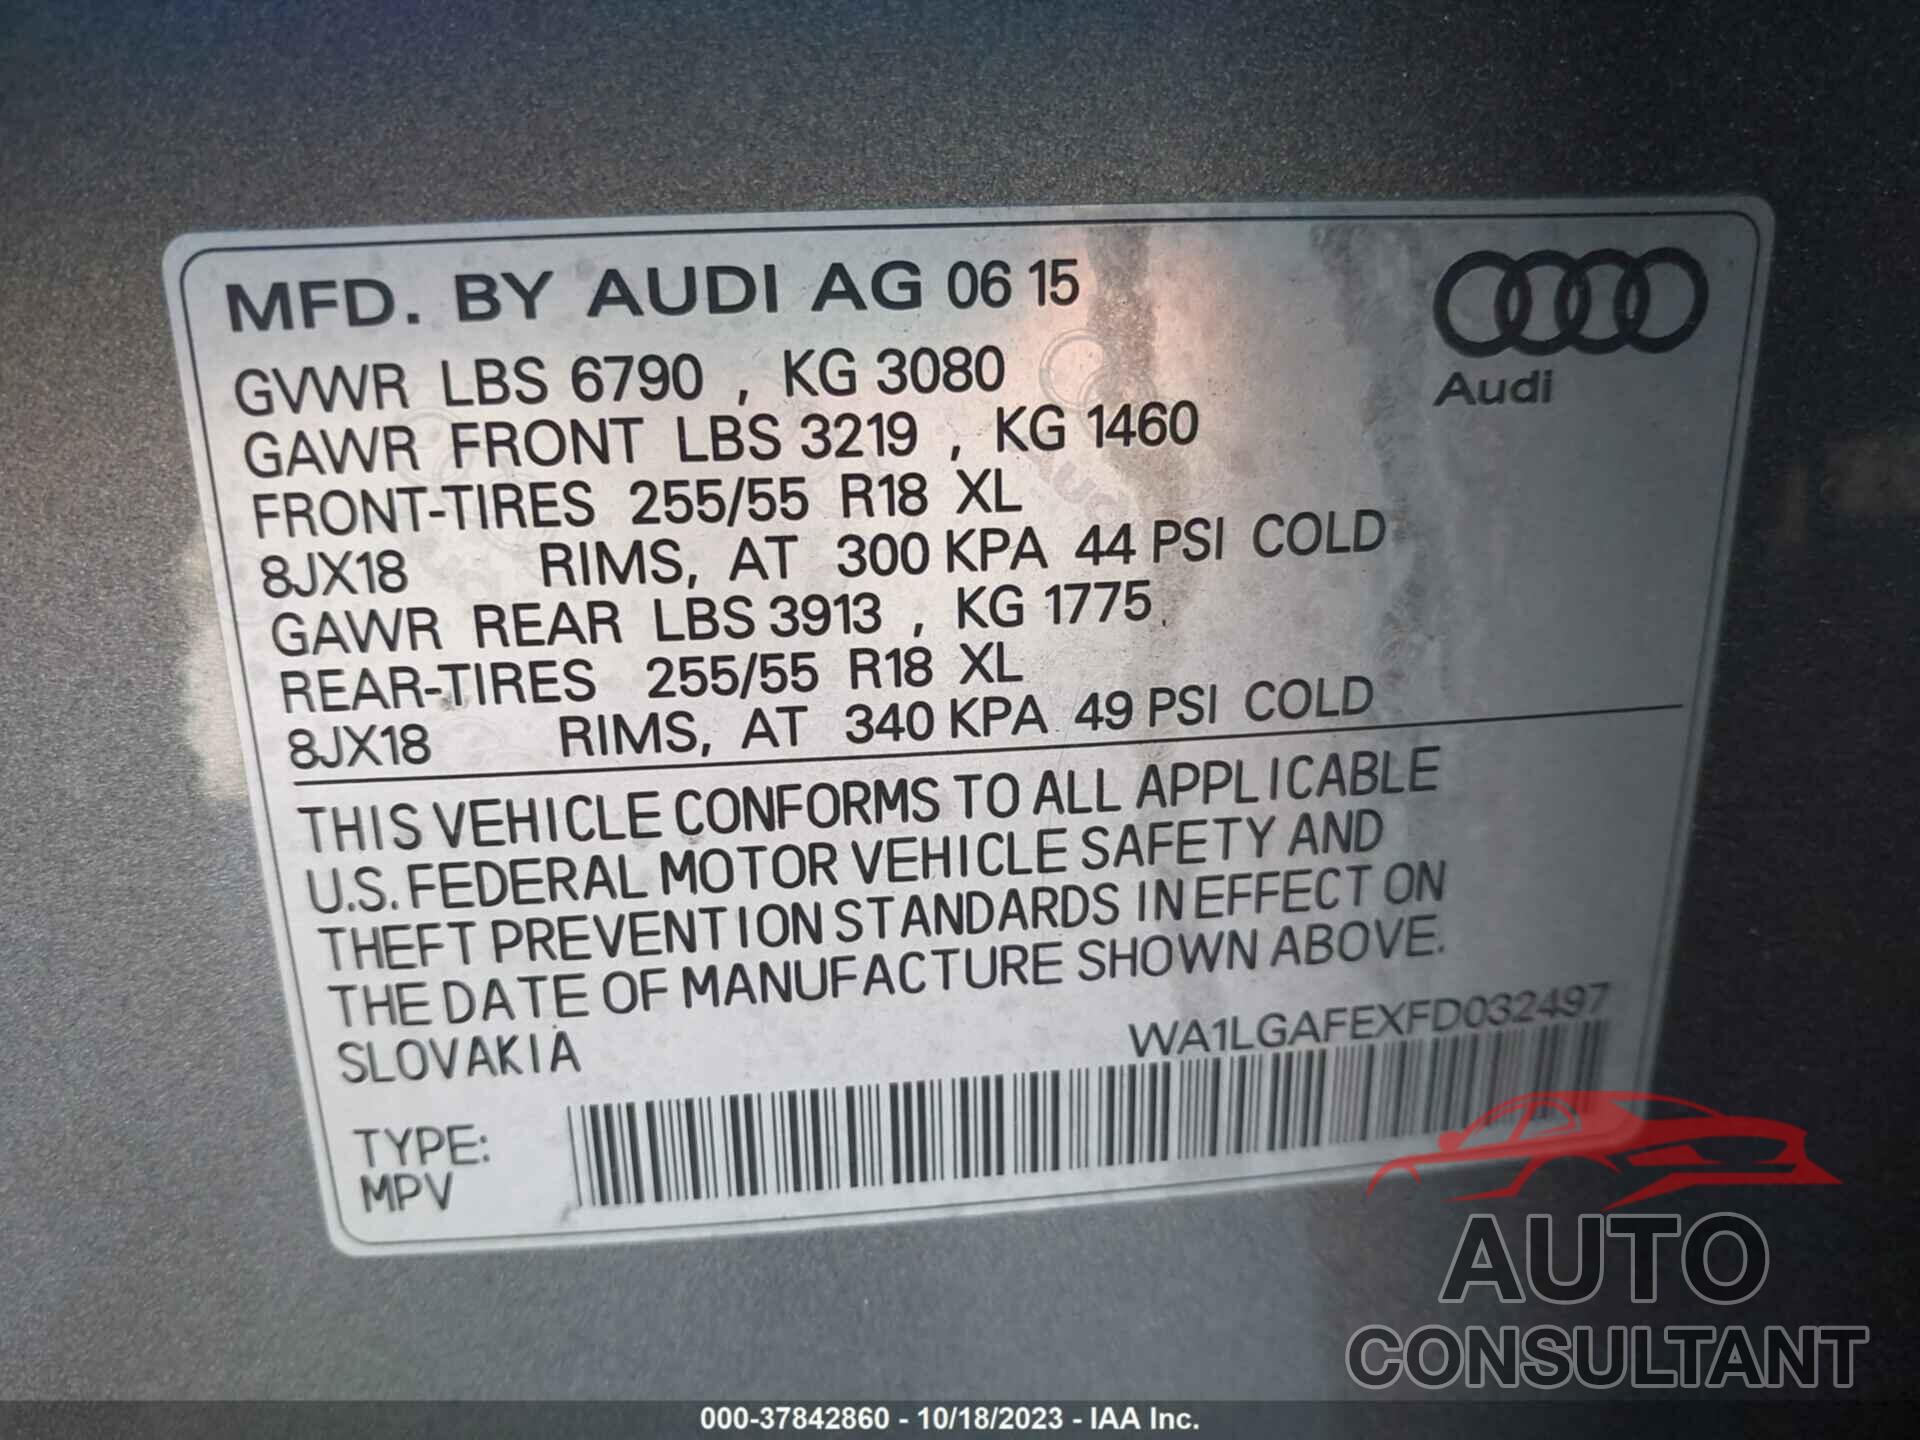 AUDI Q7 2015 - WA1LGAFEXFD032497